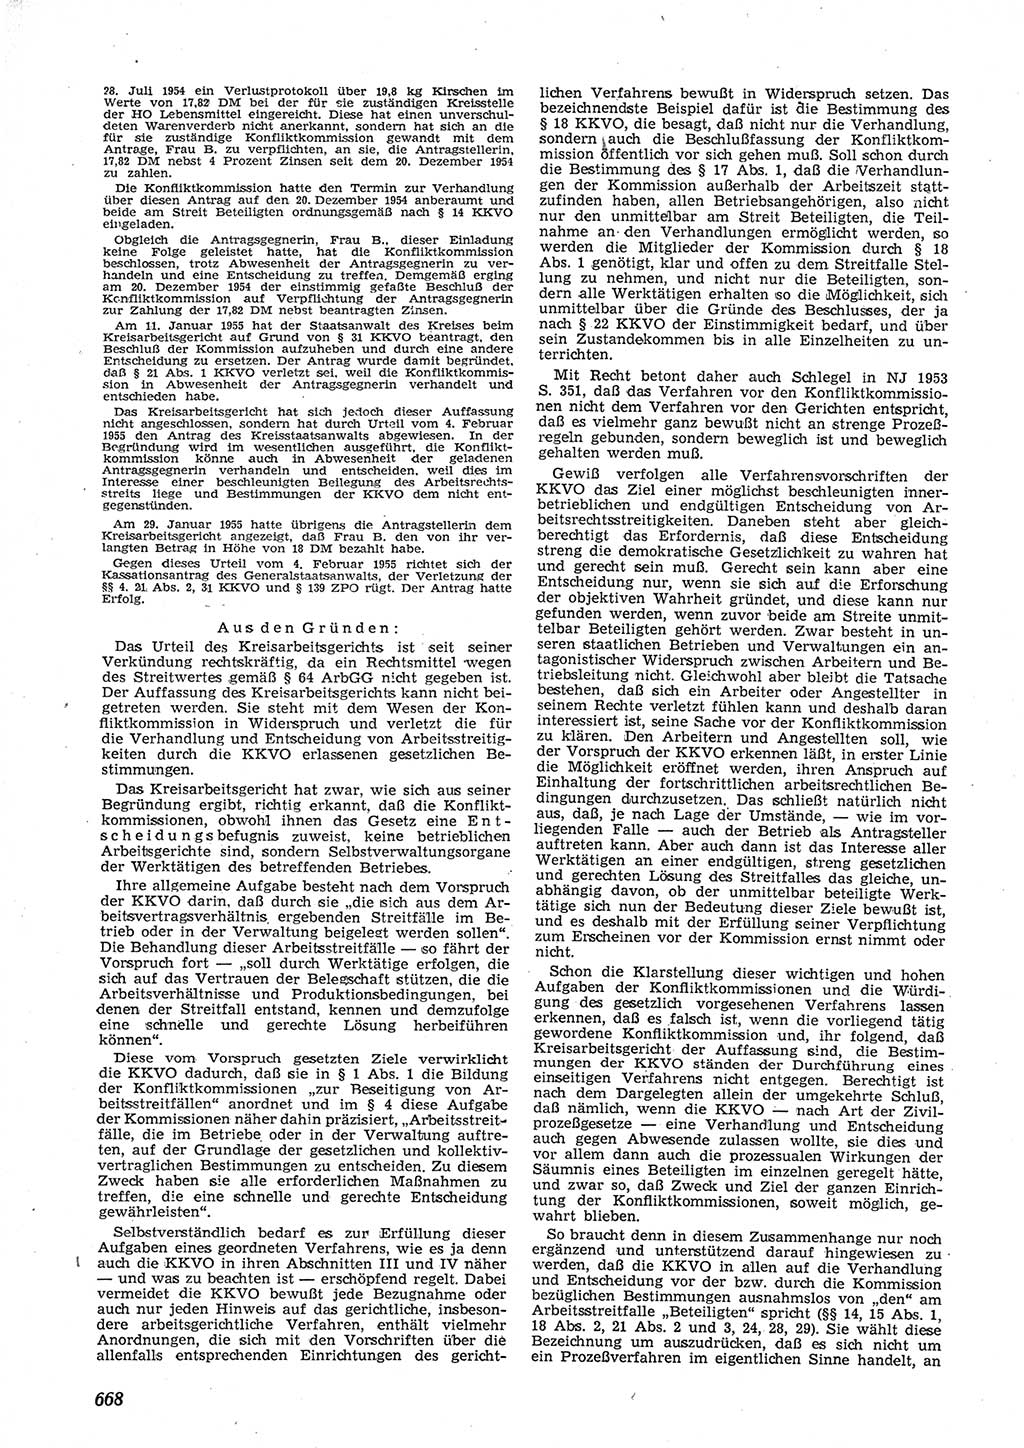 Neue Justiz (NJ), Zeitschrift für Recht und Rechtswissenschaft [Deutsche Demokratische Republik (DDR)], 9. Jahrgang 1955, Seite 668 (NJ DDR 1955, S. 668)